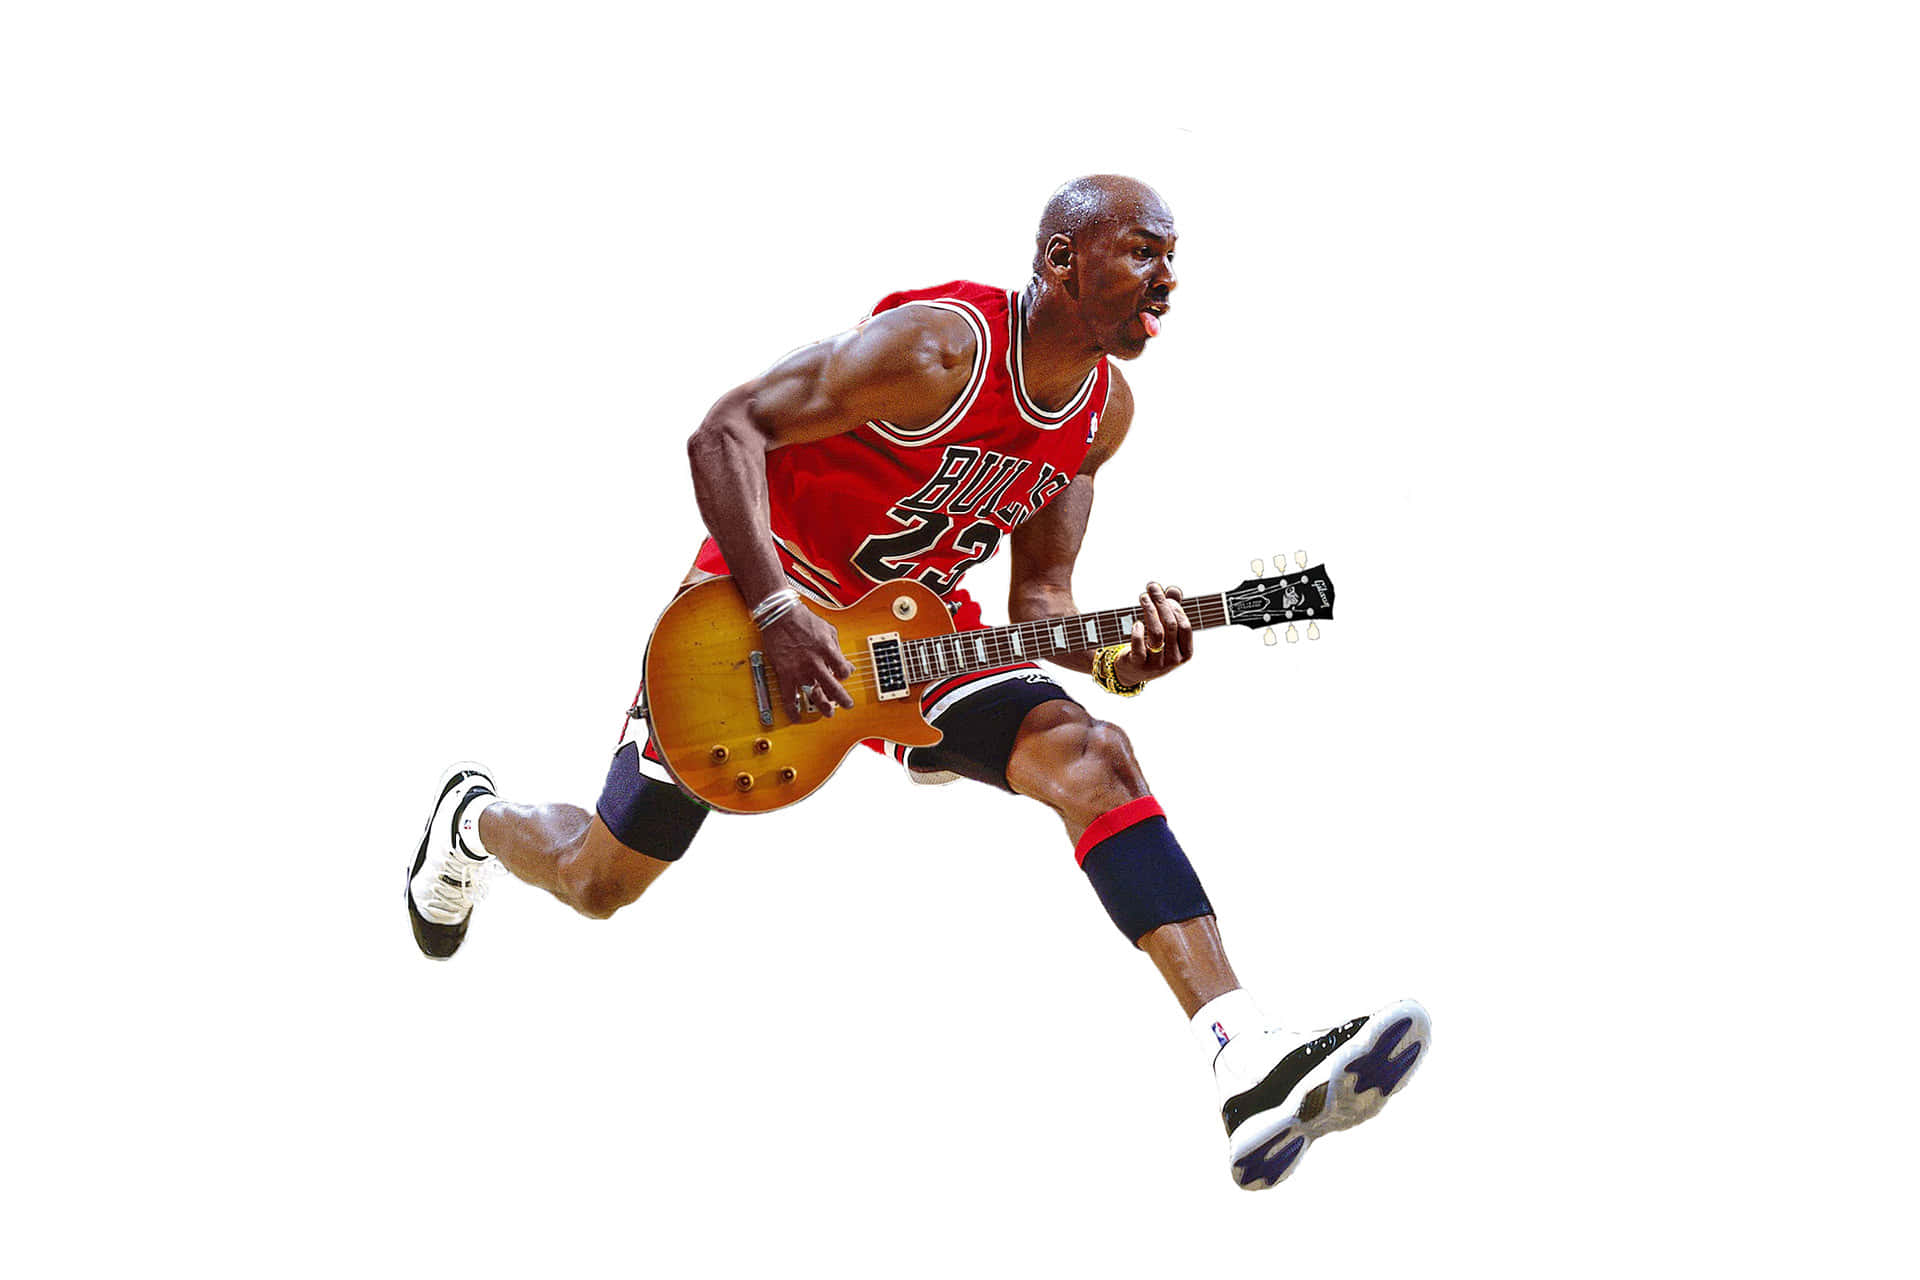 Legendariskbasketballspiller Michael Jordan.